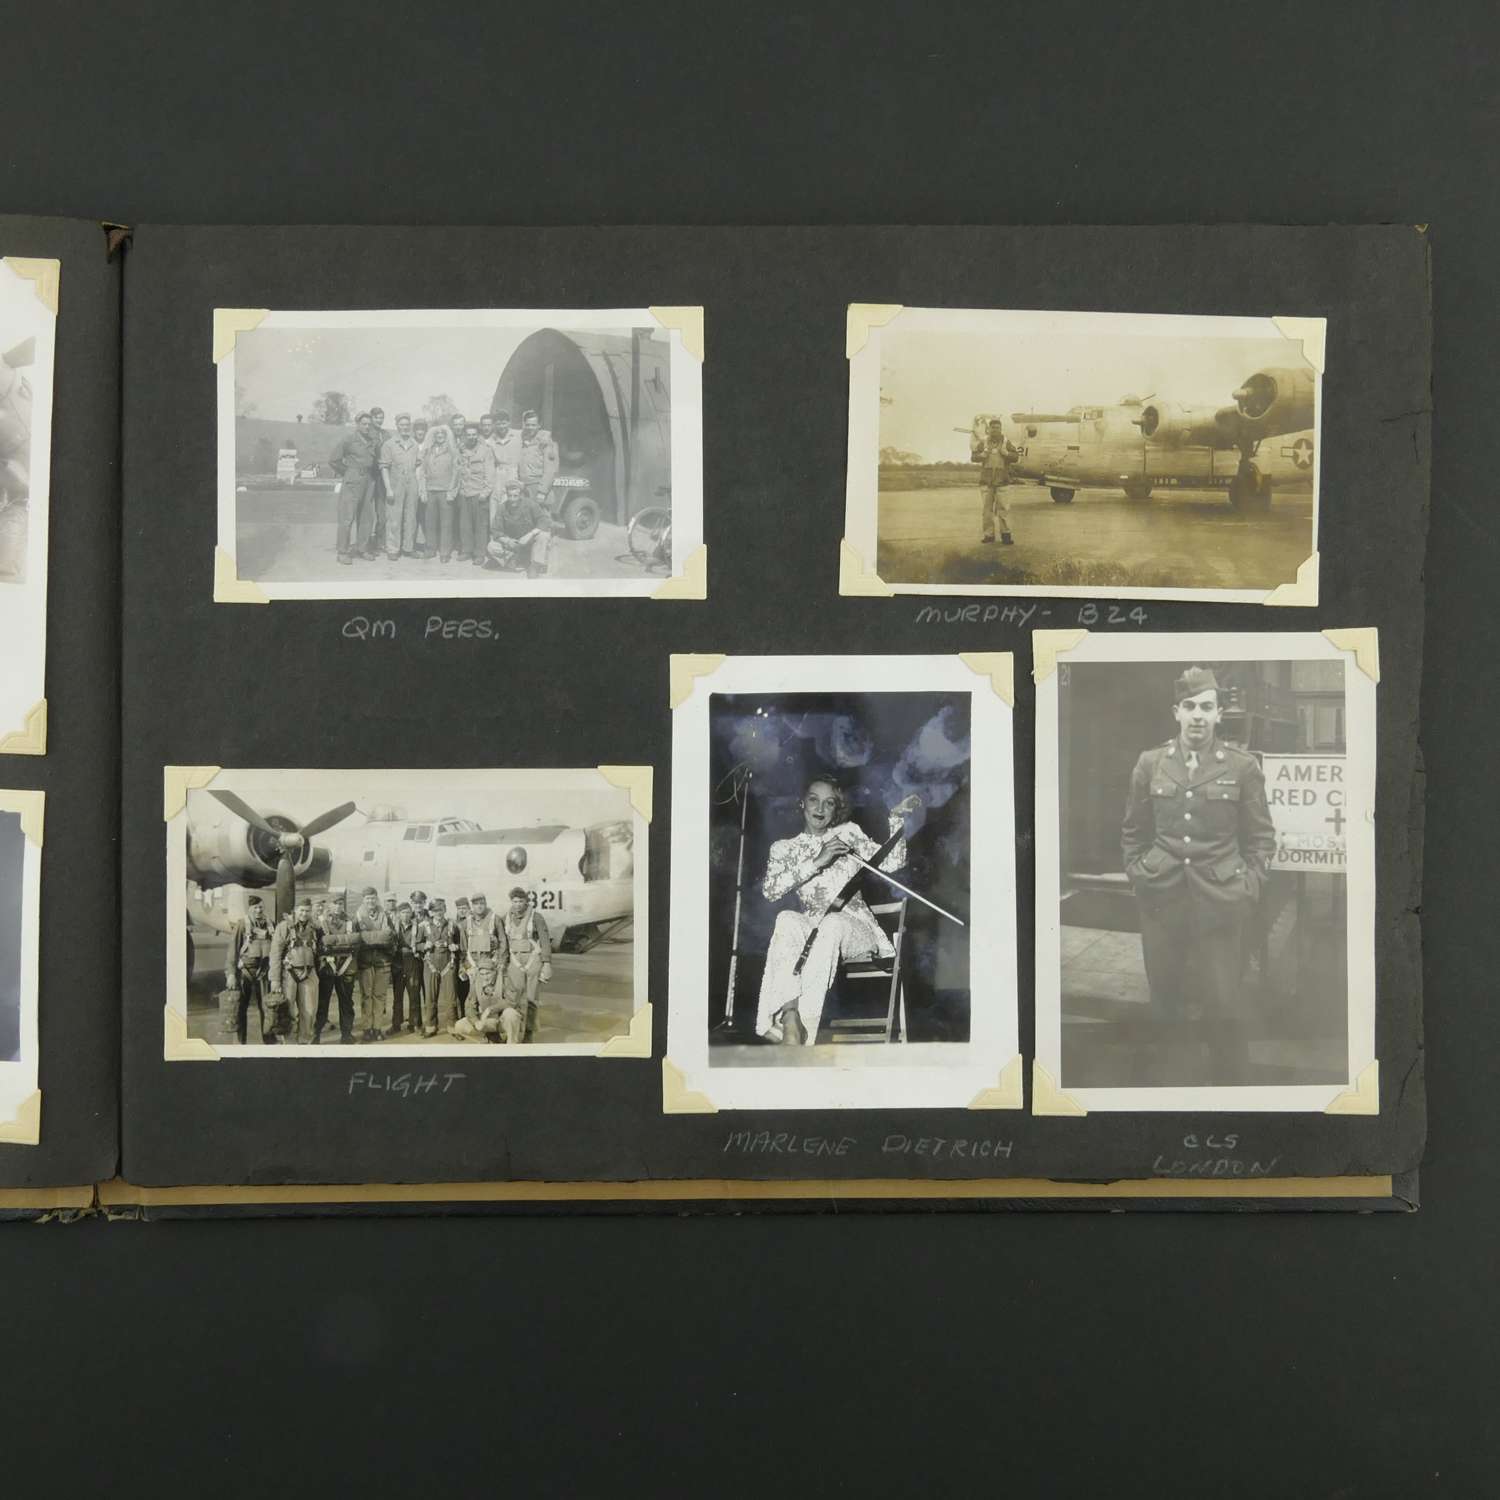 USAAF 8th AAF photograph album